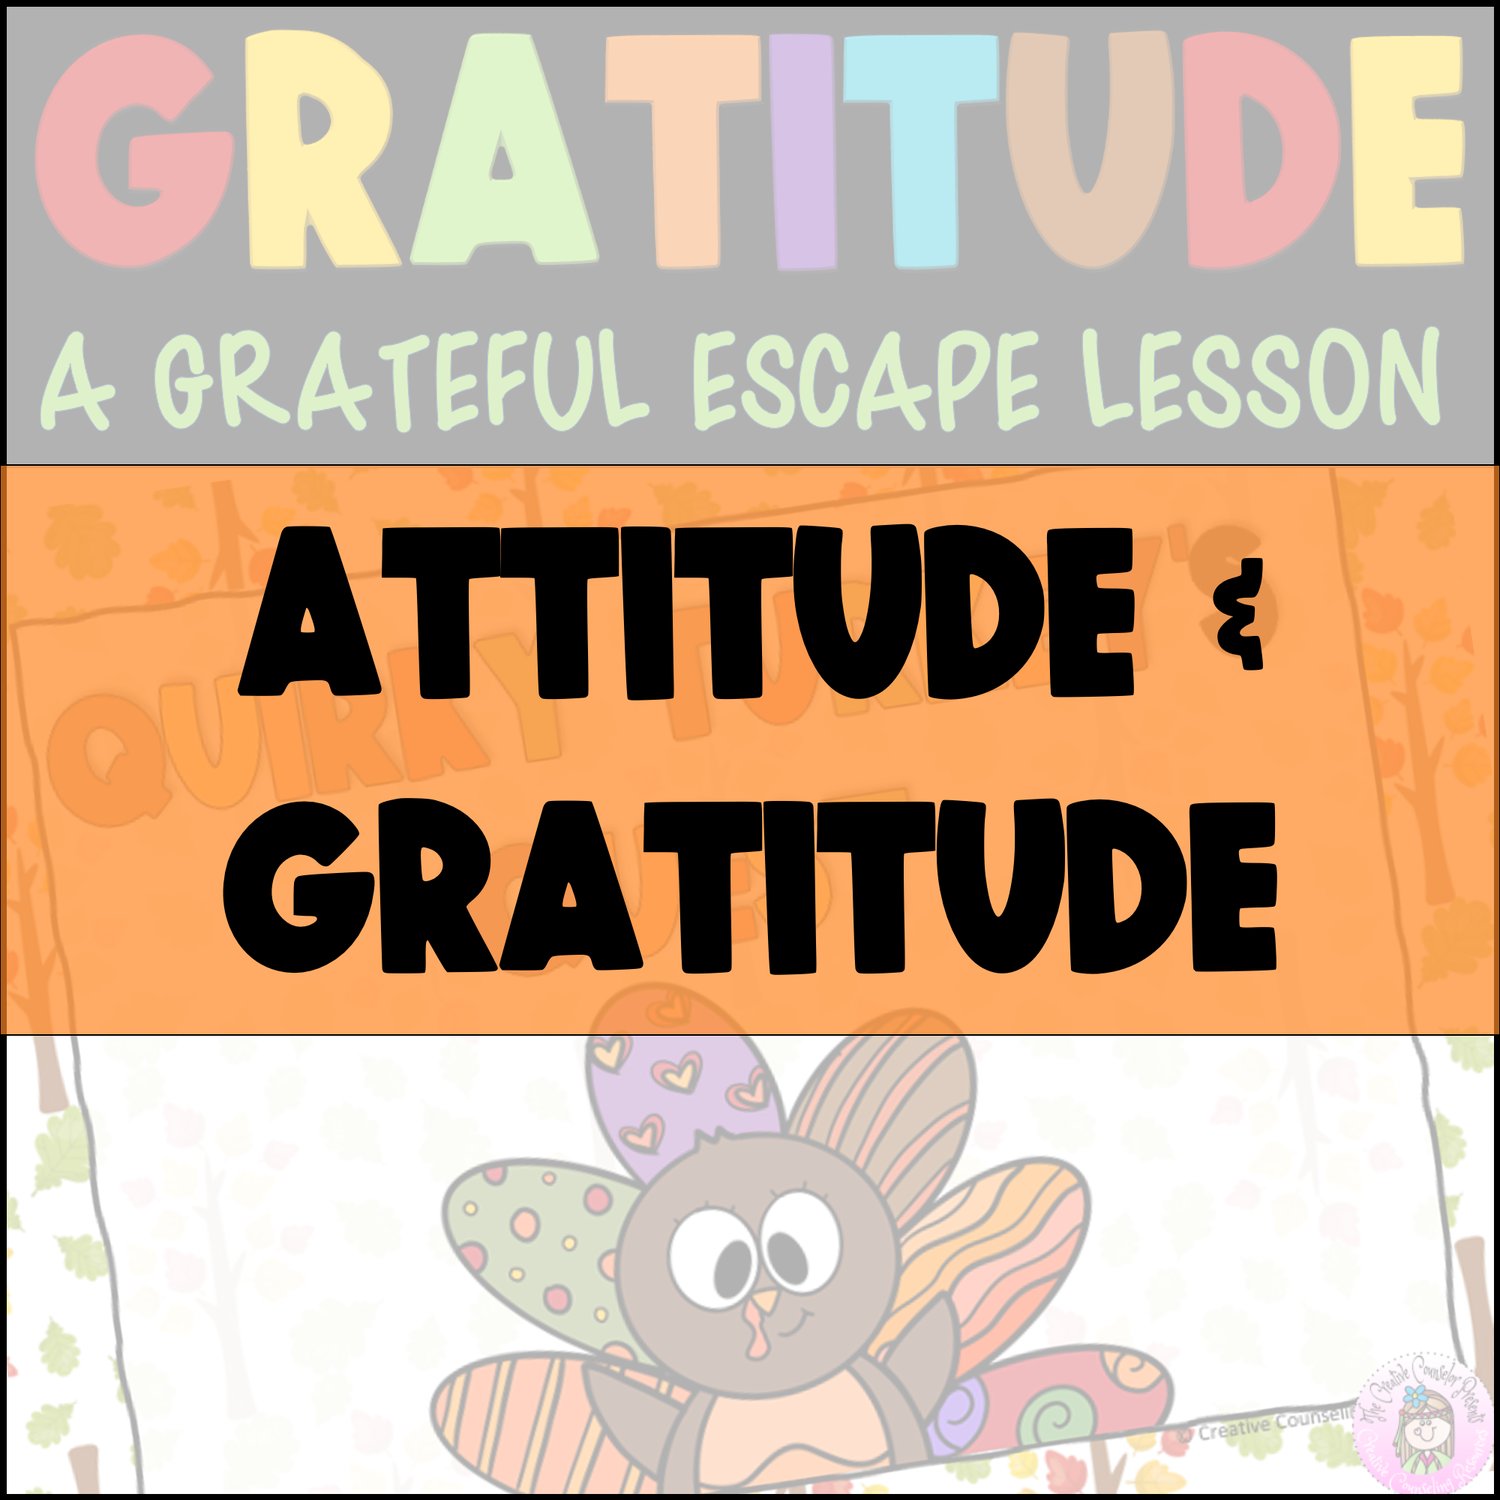 Attitude & Gratitude Lessons & Activities